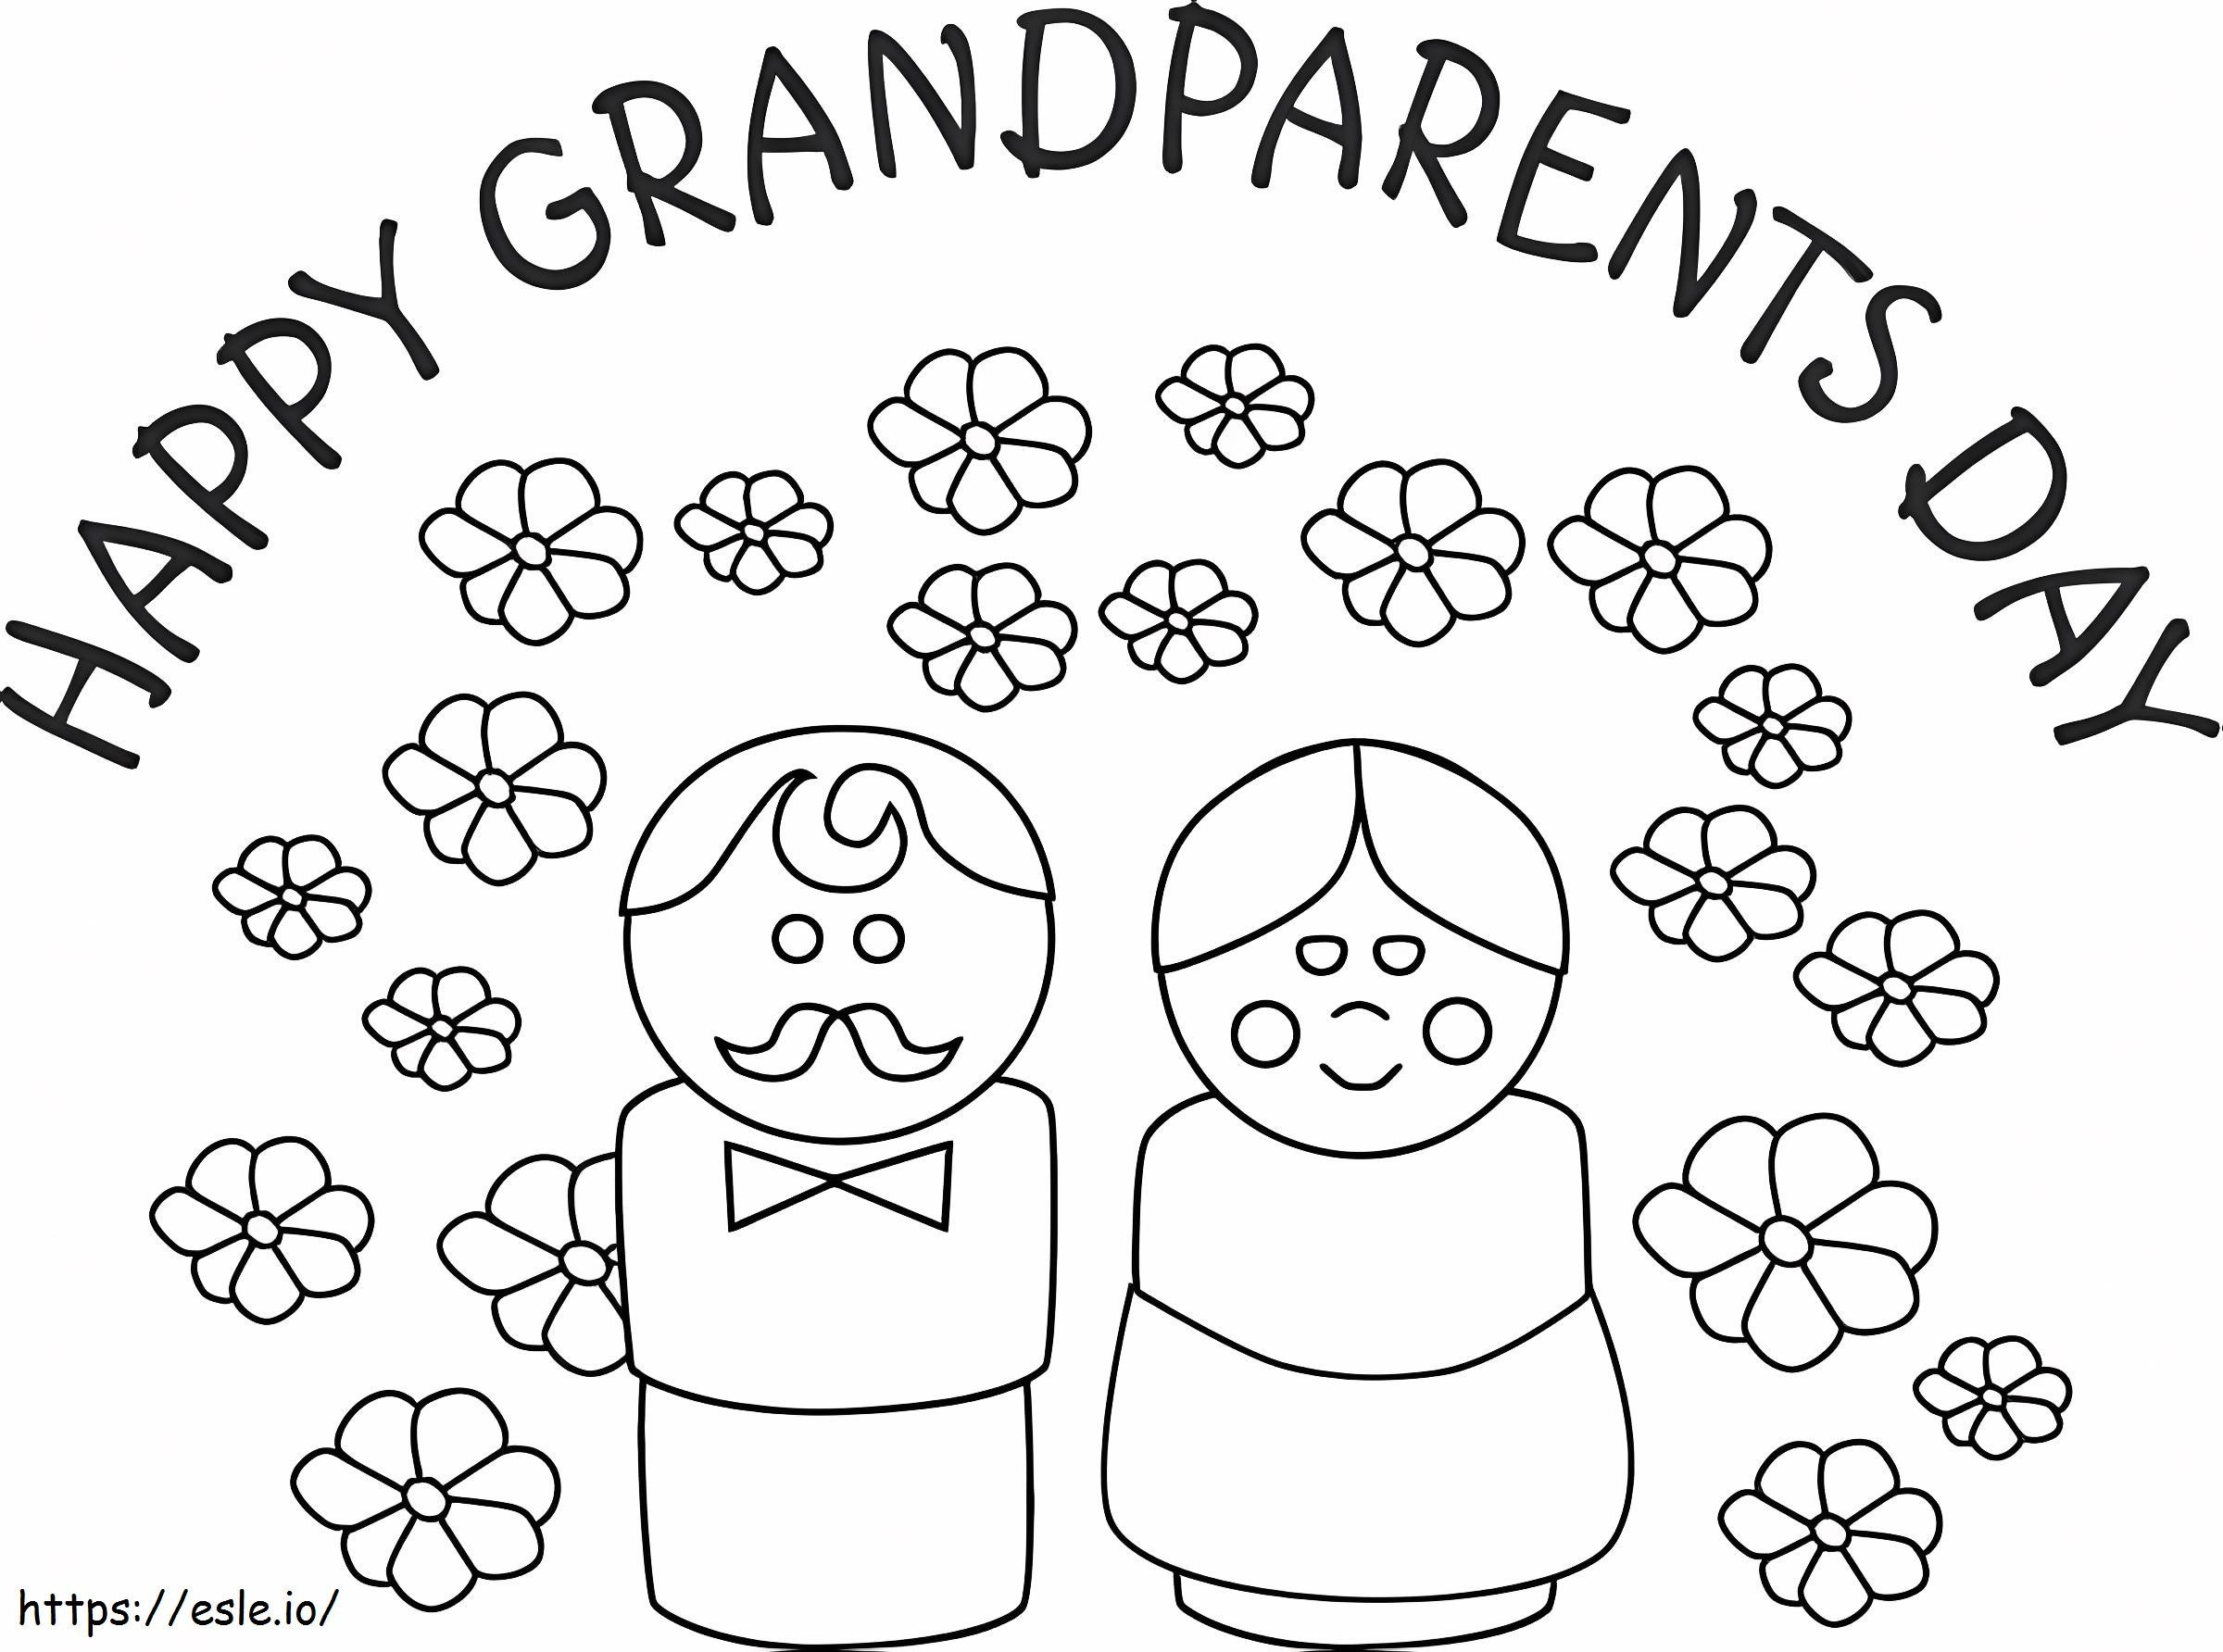 Szczęśliwego Dnia Dziadków kolorowanka